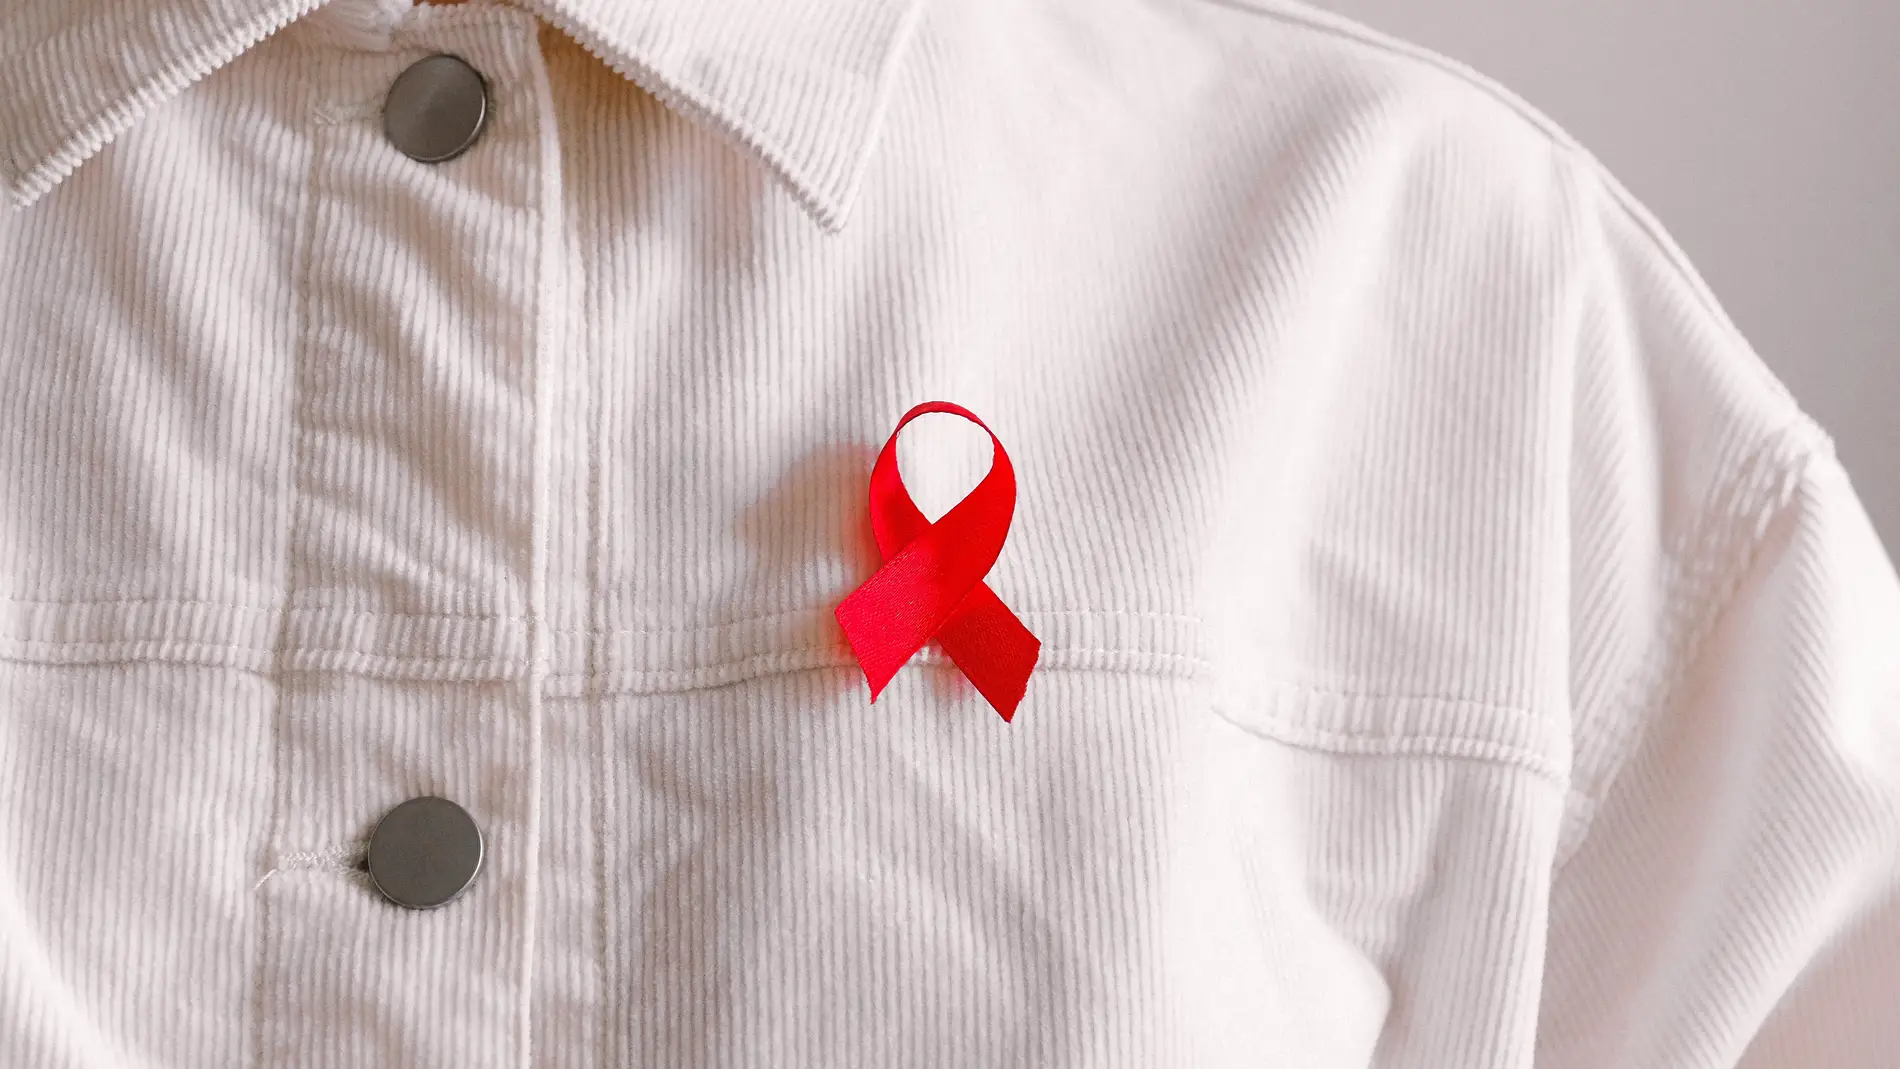 Lazo rojo sida: ¿cuál es su significado y qué simboliza? | Onda Cero Radio